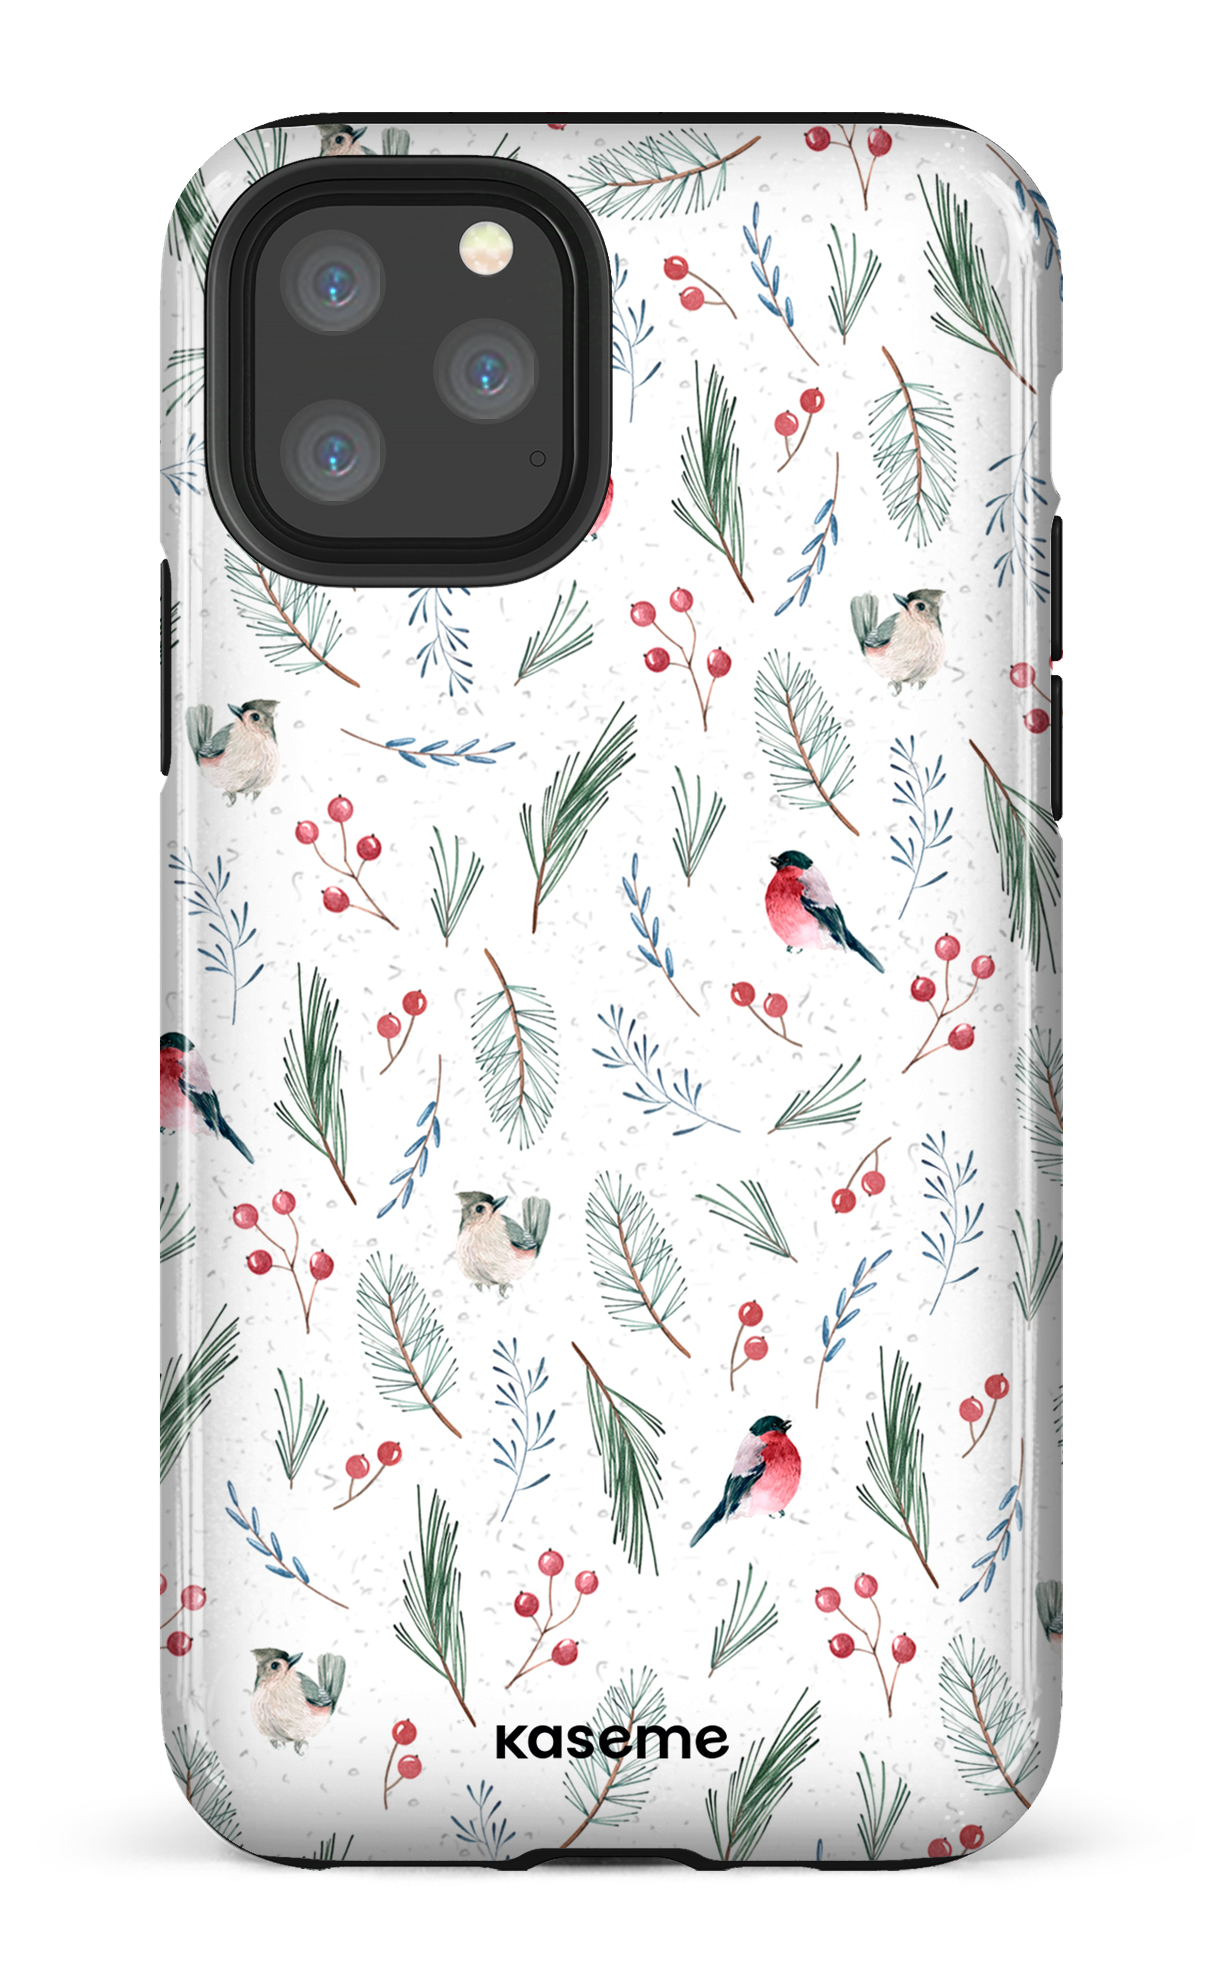 Cardinal - iPhone 11 Pro